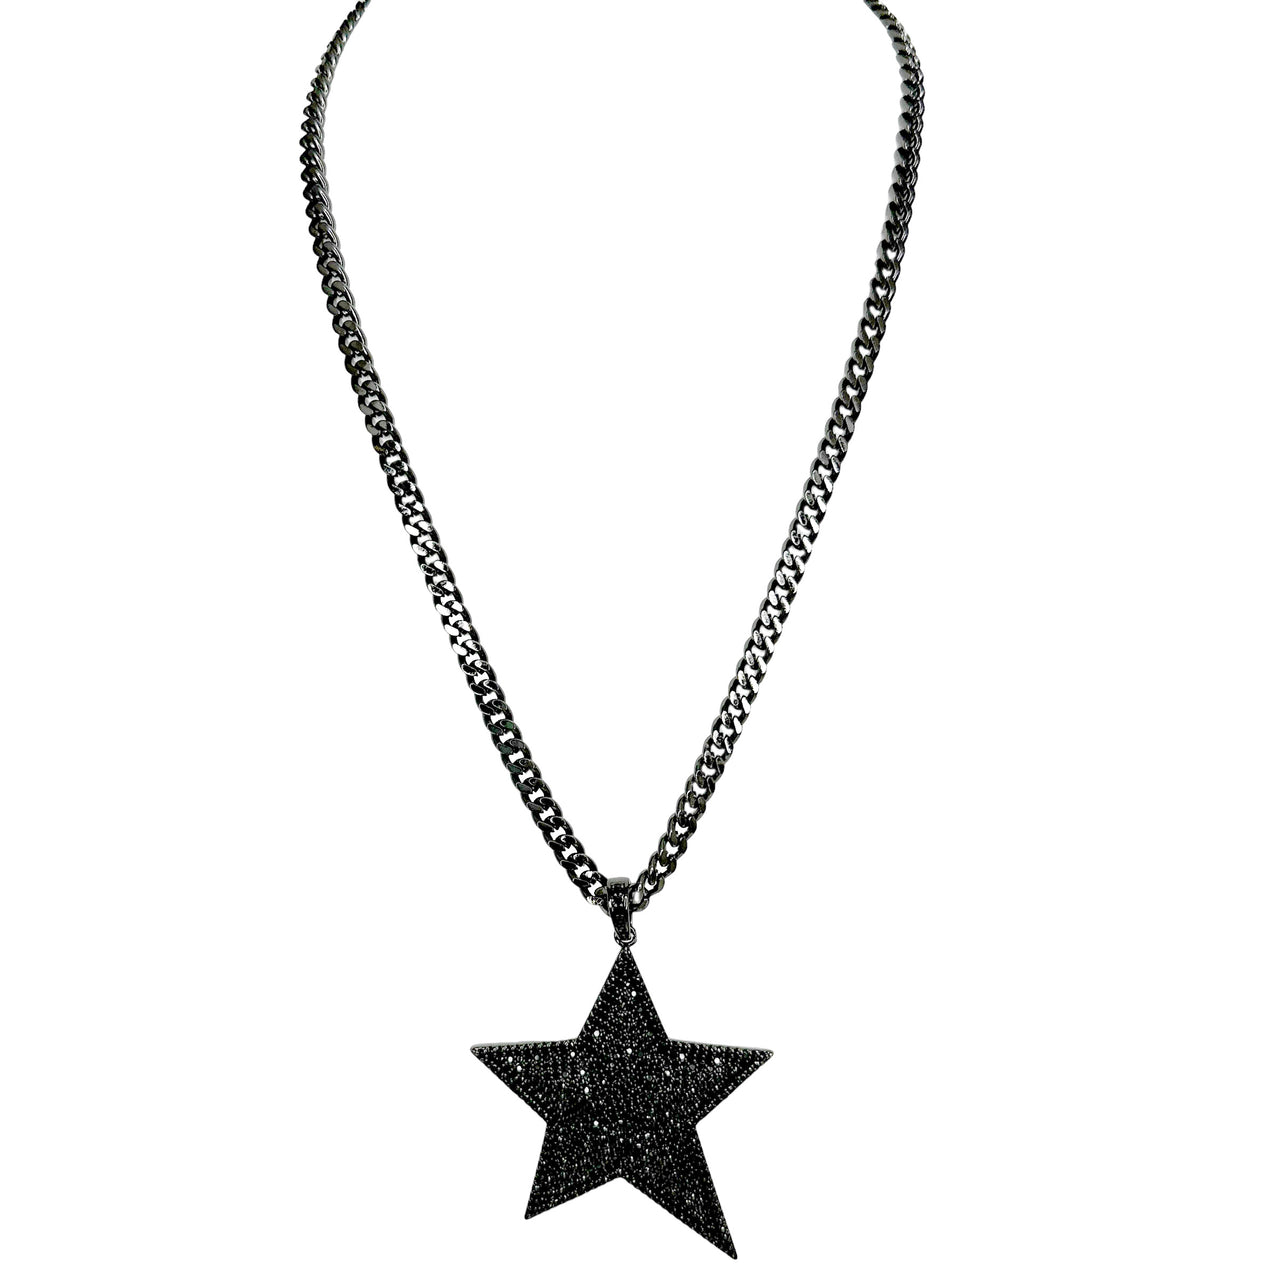 Lori Superstar 20" Necklace